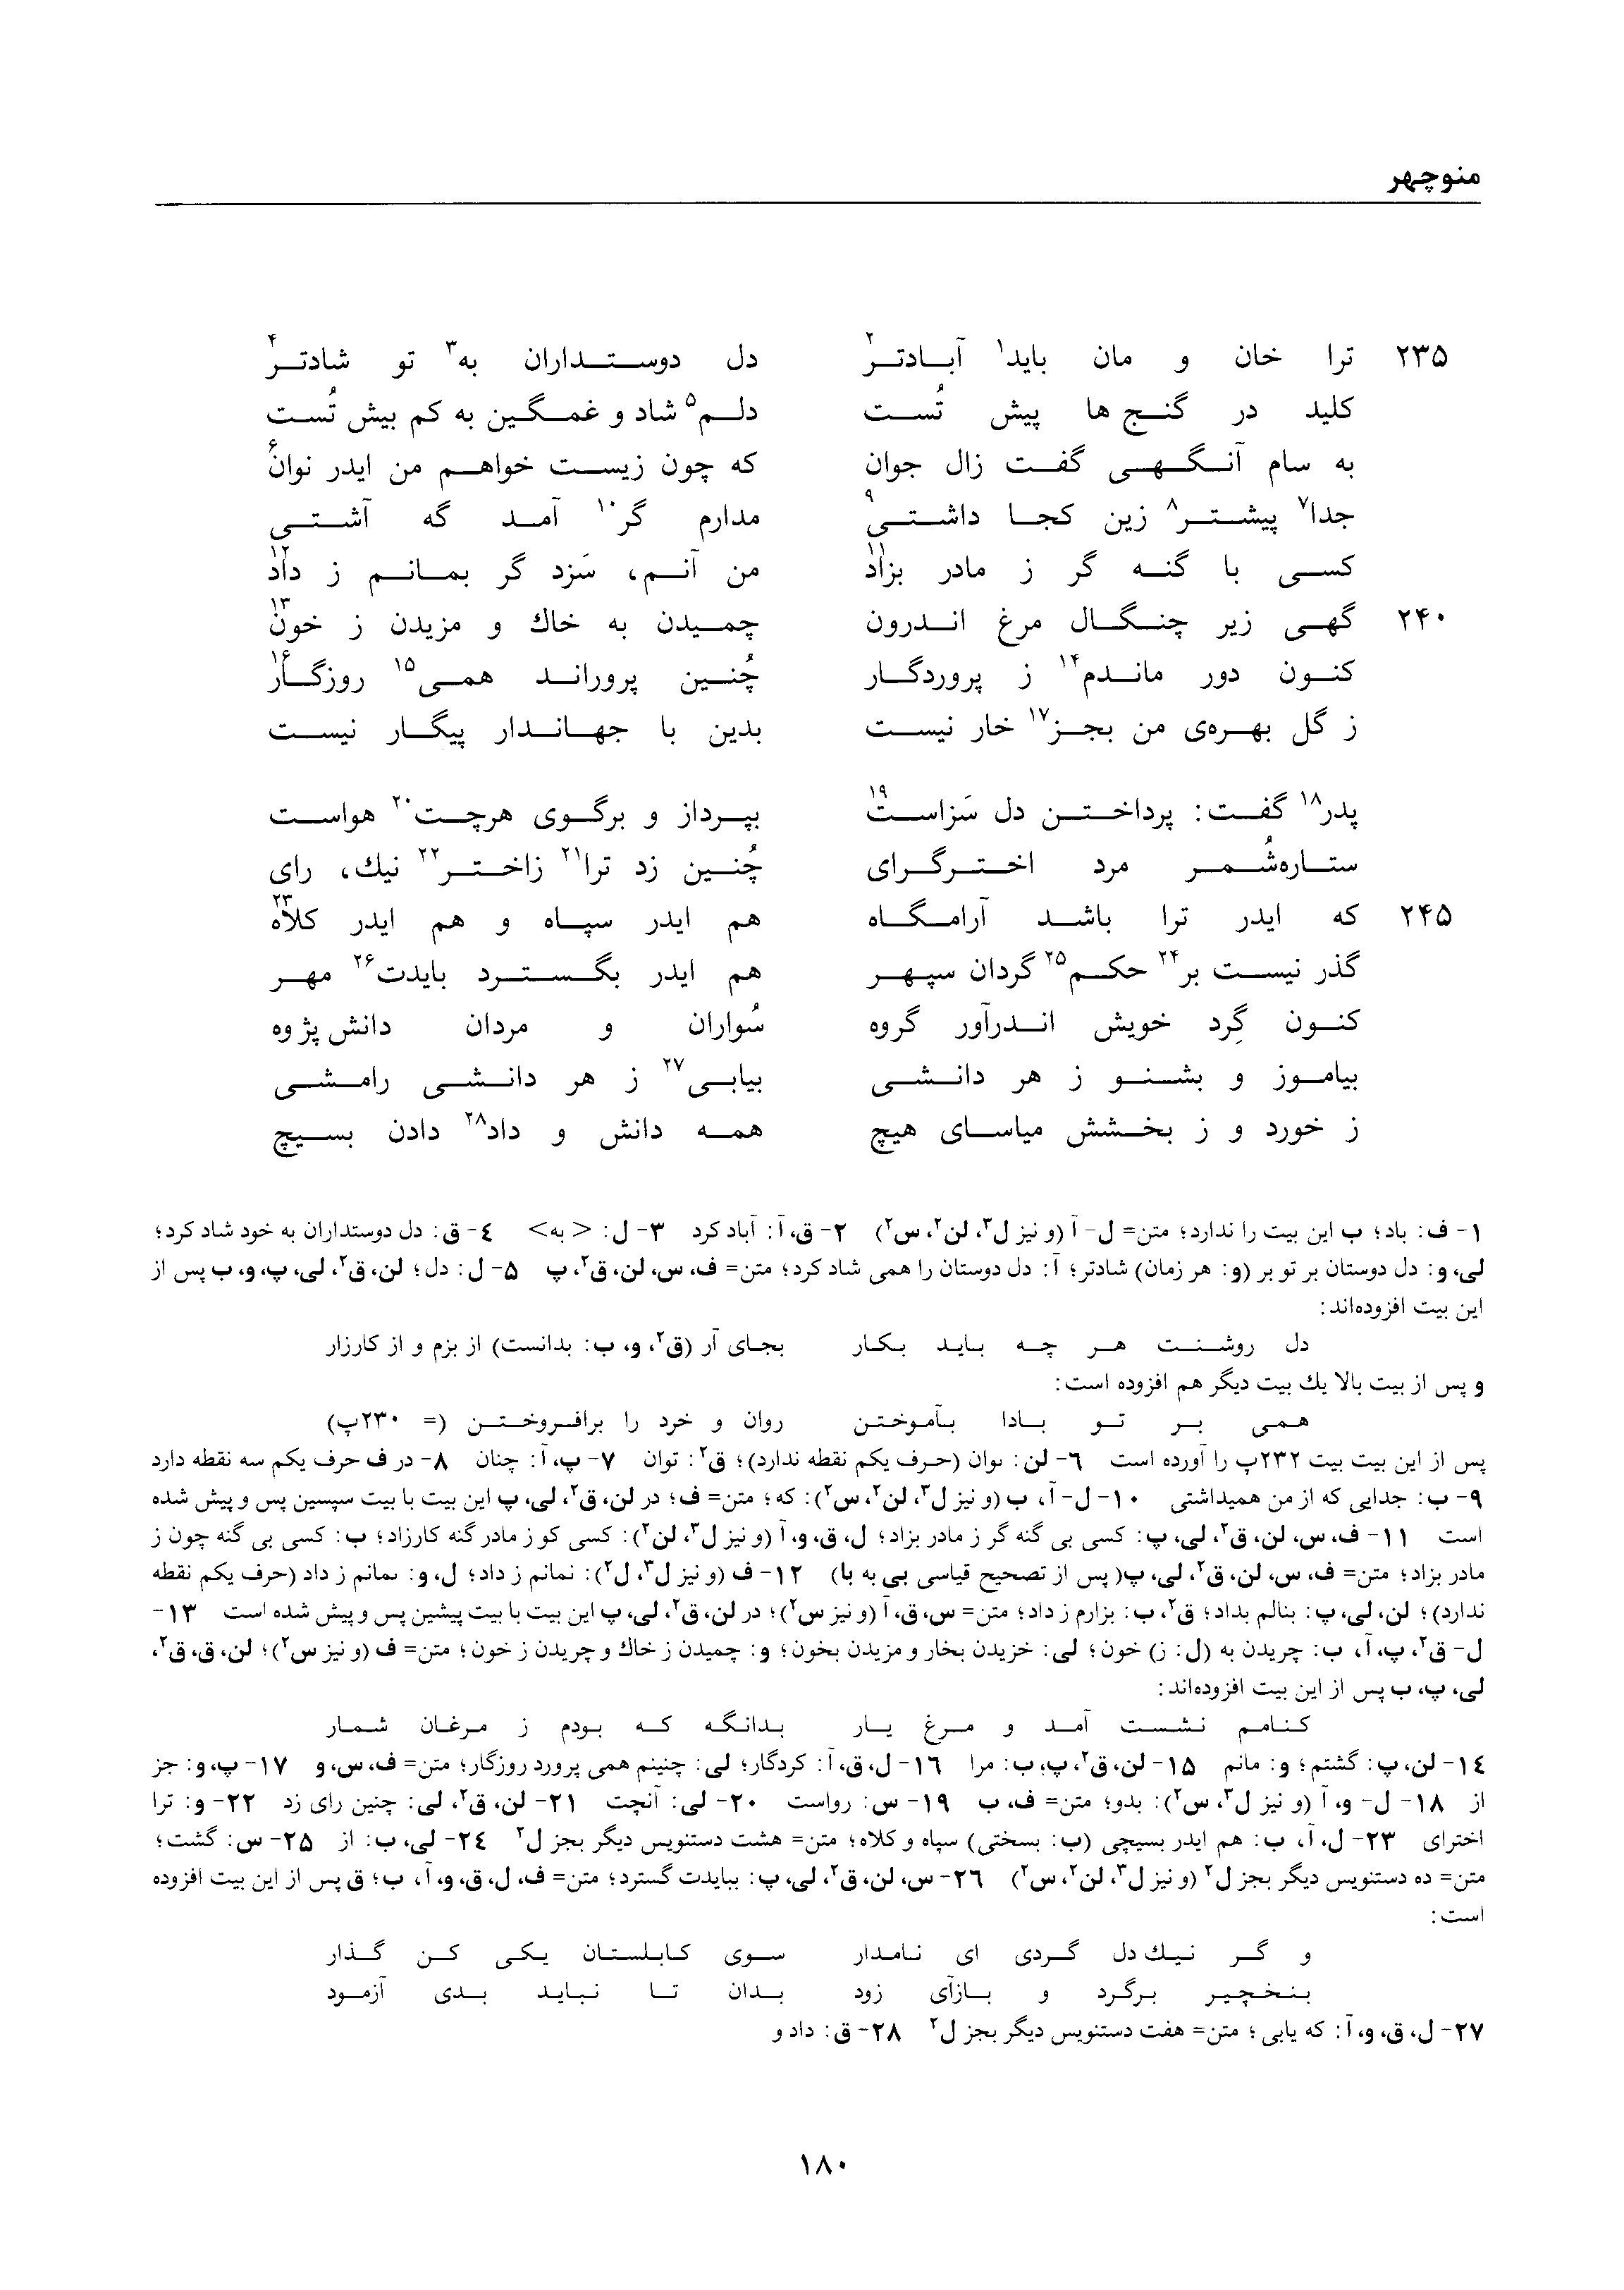 vol. 1, p. 180